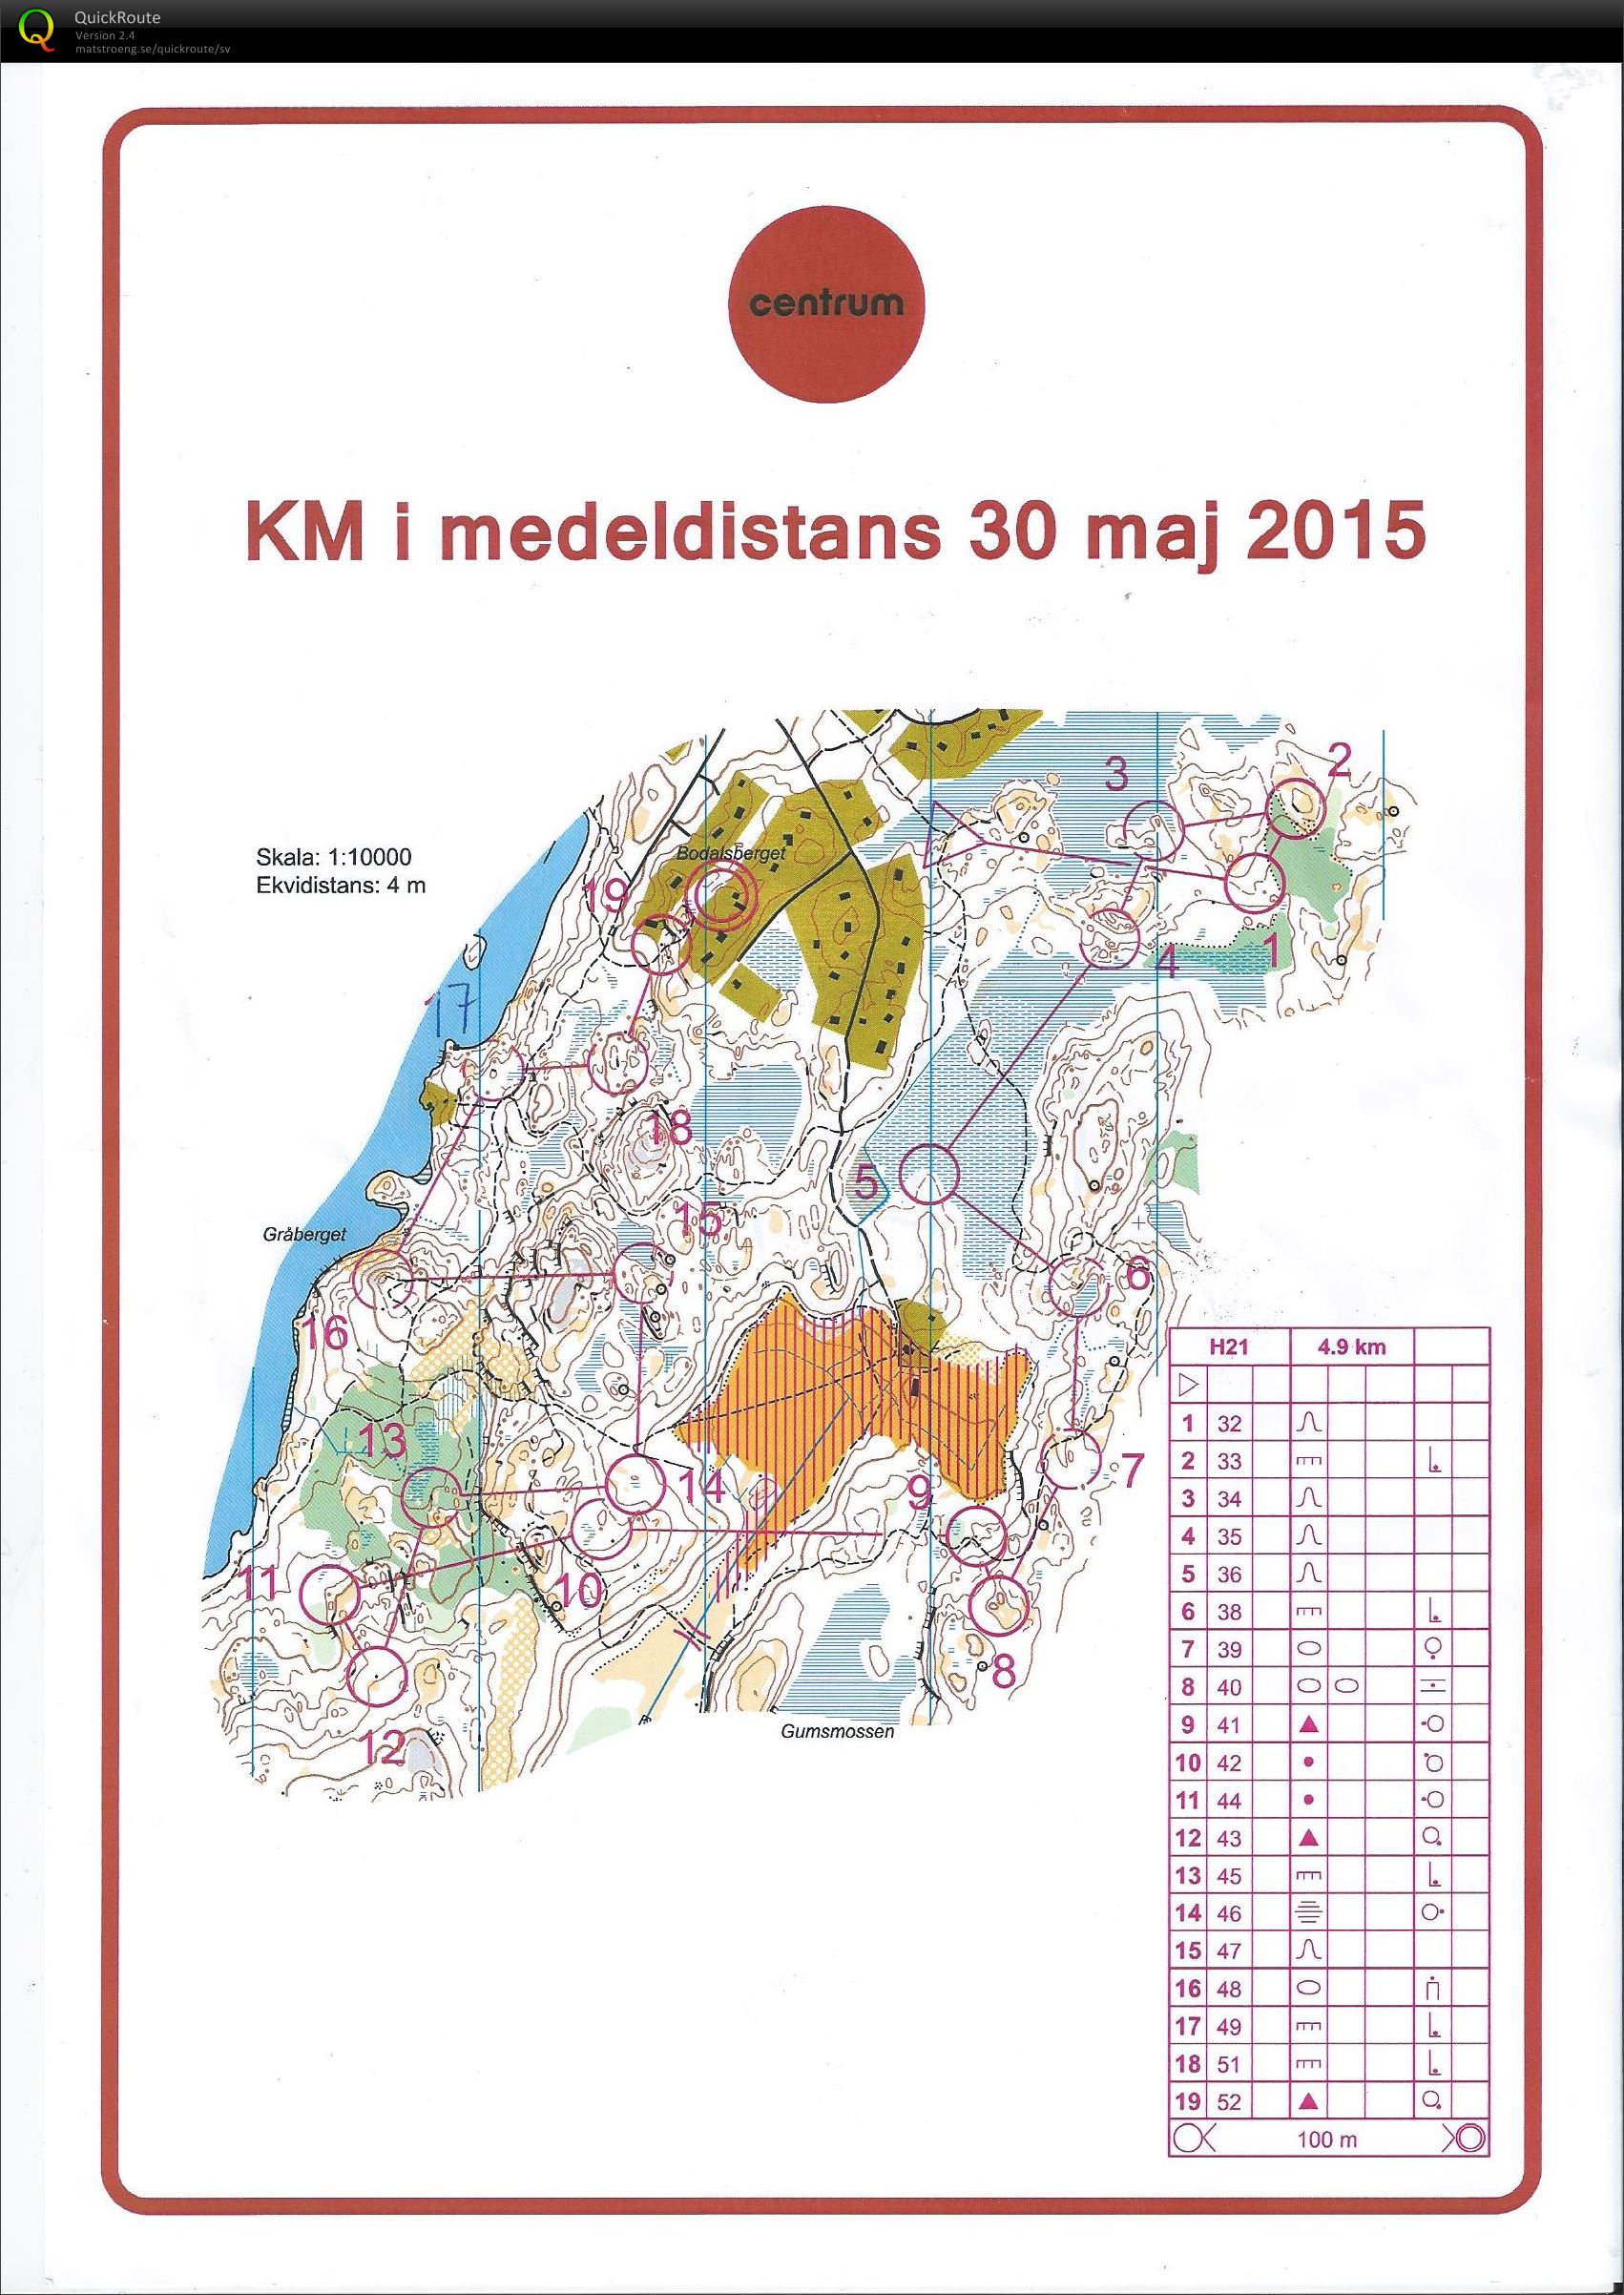 Medel-KM Ornö (30/05/2015)